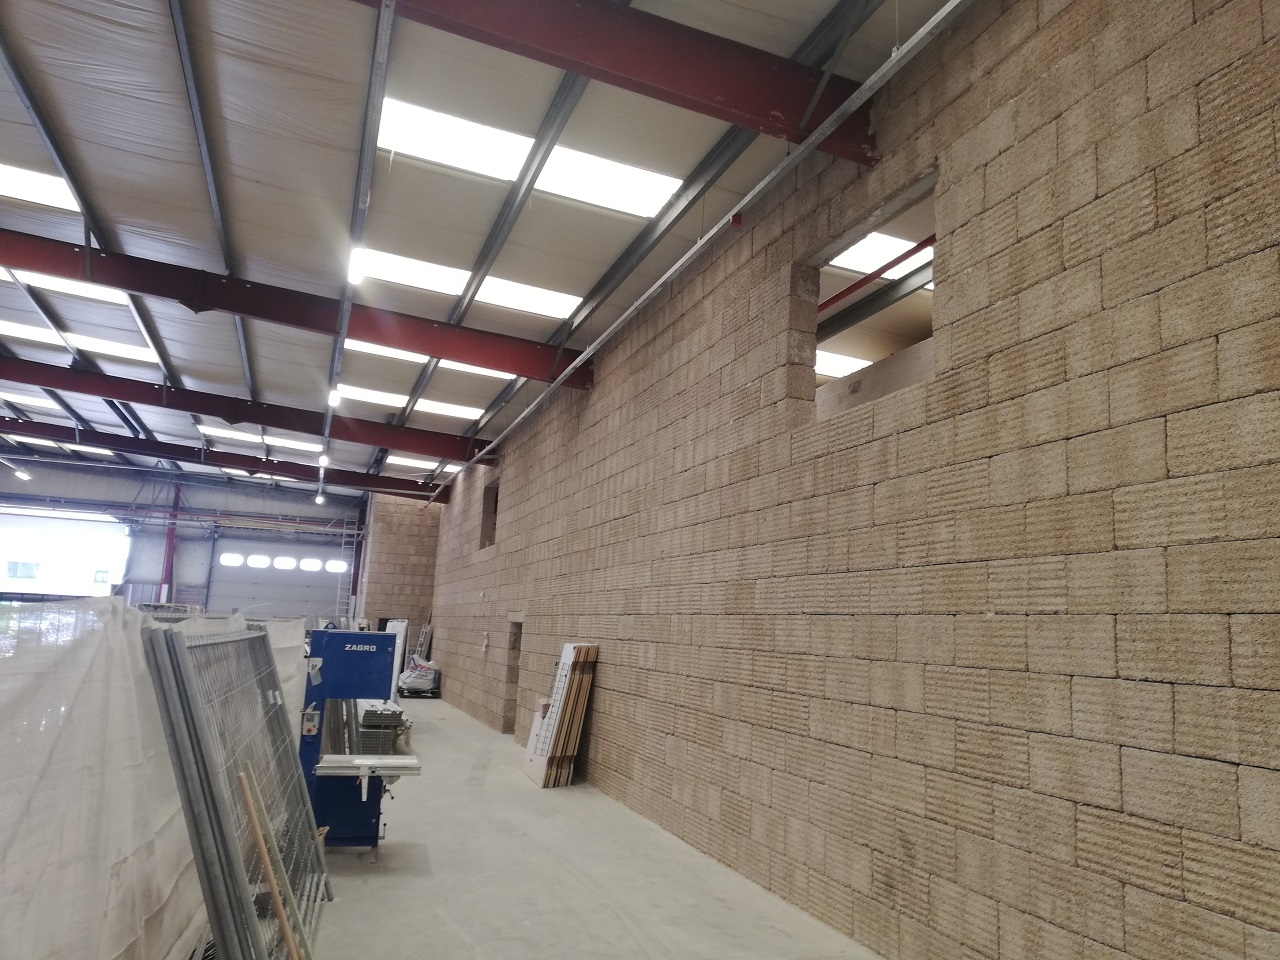 Réalisation d'un mur coupe-feu dans un hall industriel - Wavre  IsoHemp -  Construire et isoler durablement en blocs de chanvre